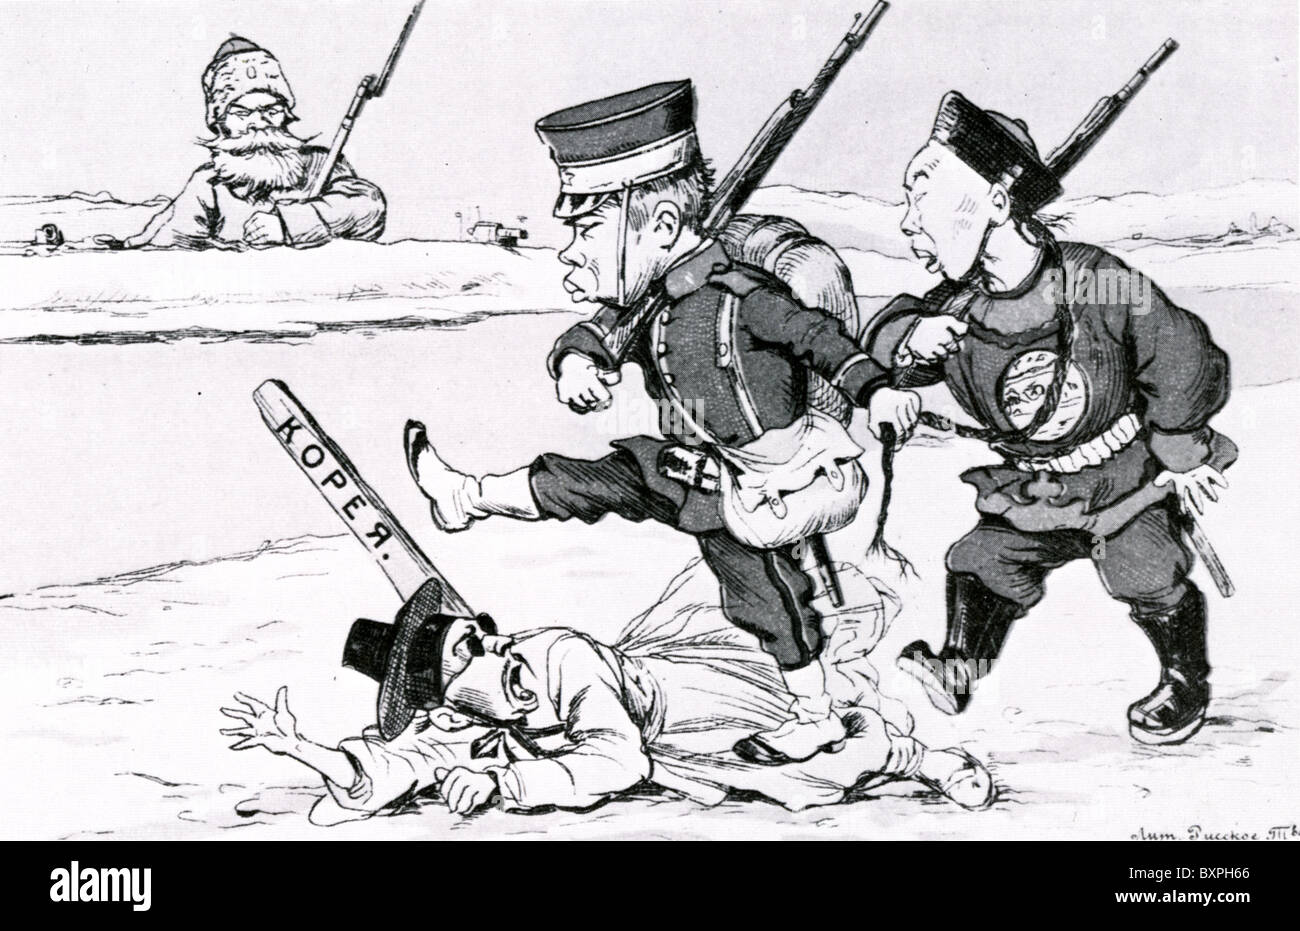 La guerre russo-japonaise (1904-05) Fédération de caricature montre l'armée japonaise attaque coréens tandis que la Russie demeure indifférent Banque D'Images